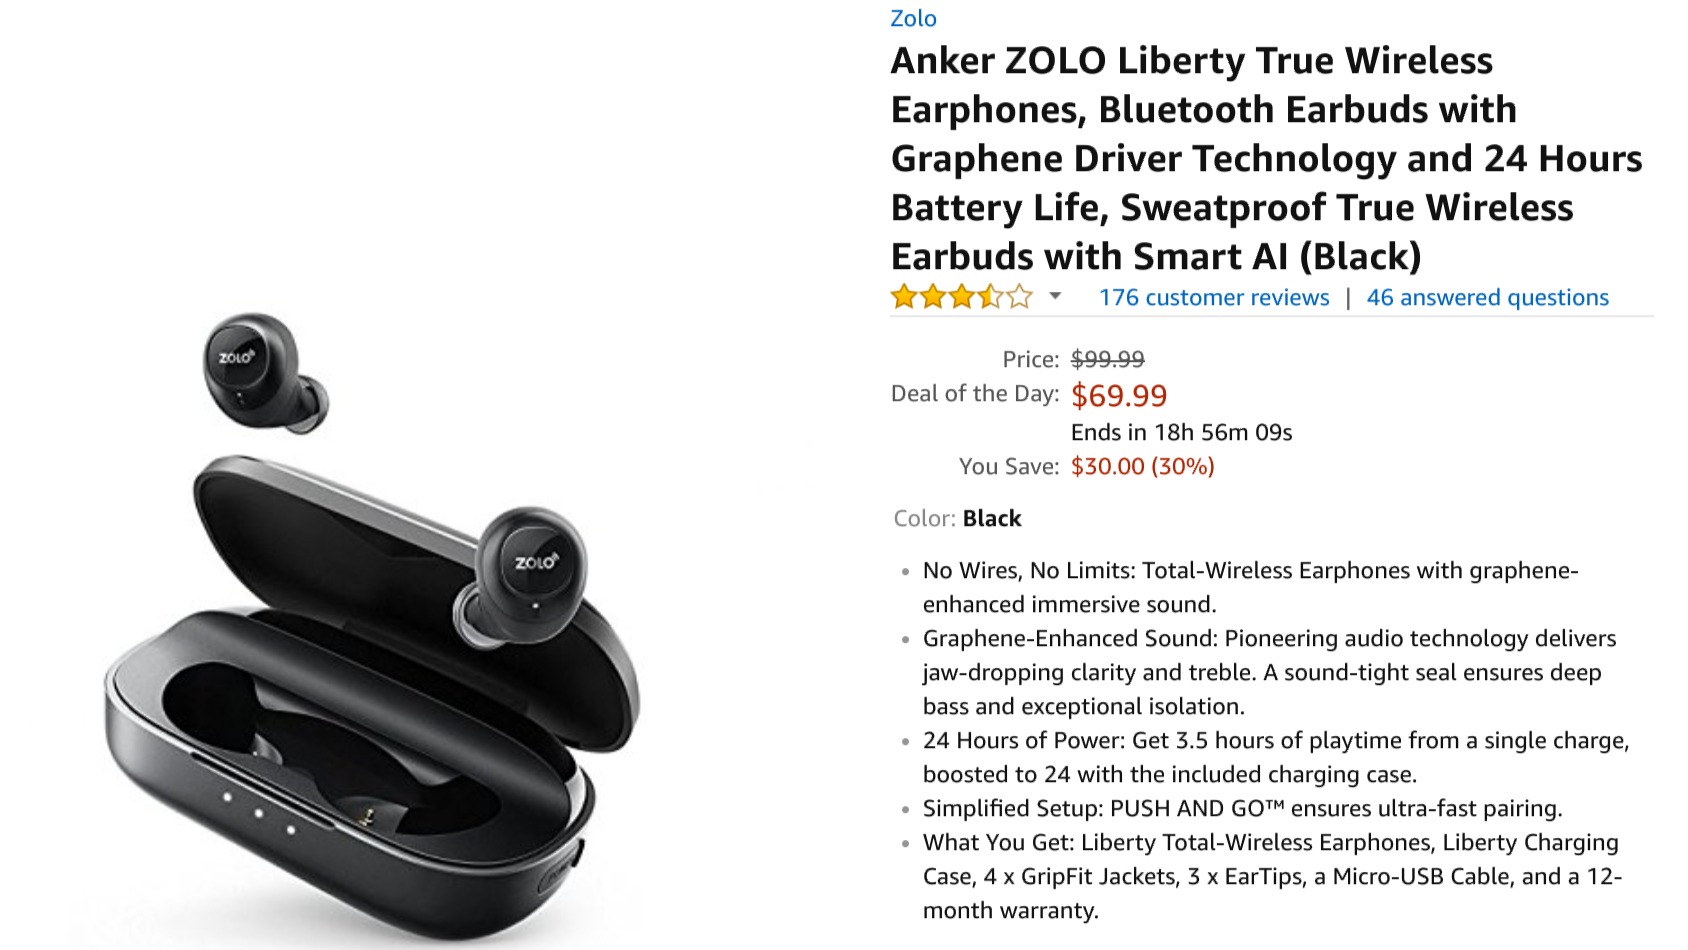 Anker Zolo Liberty earphones Amazon listing